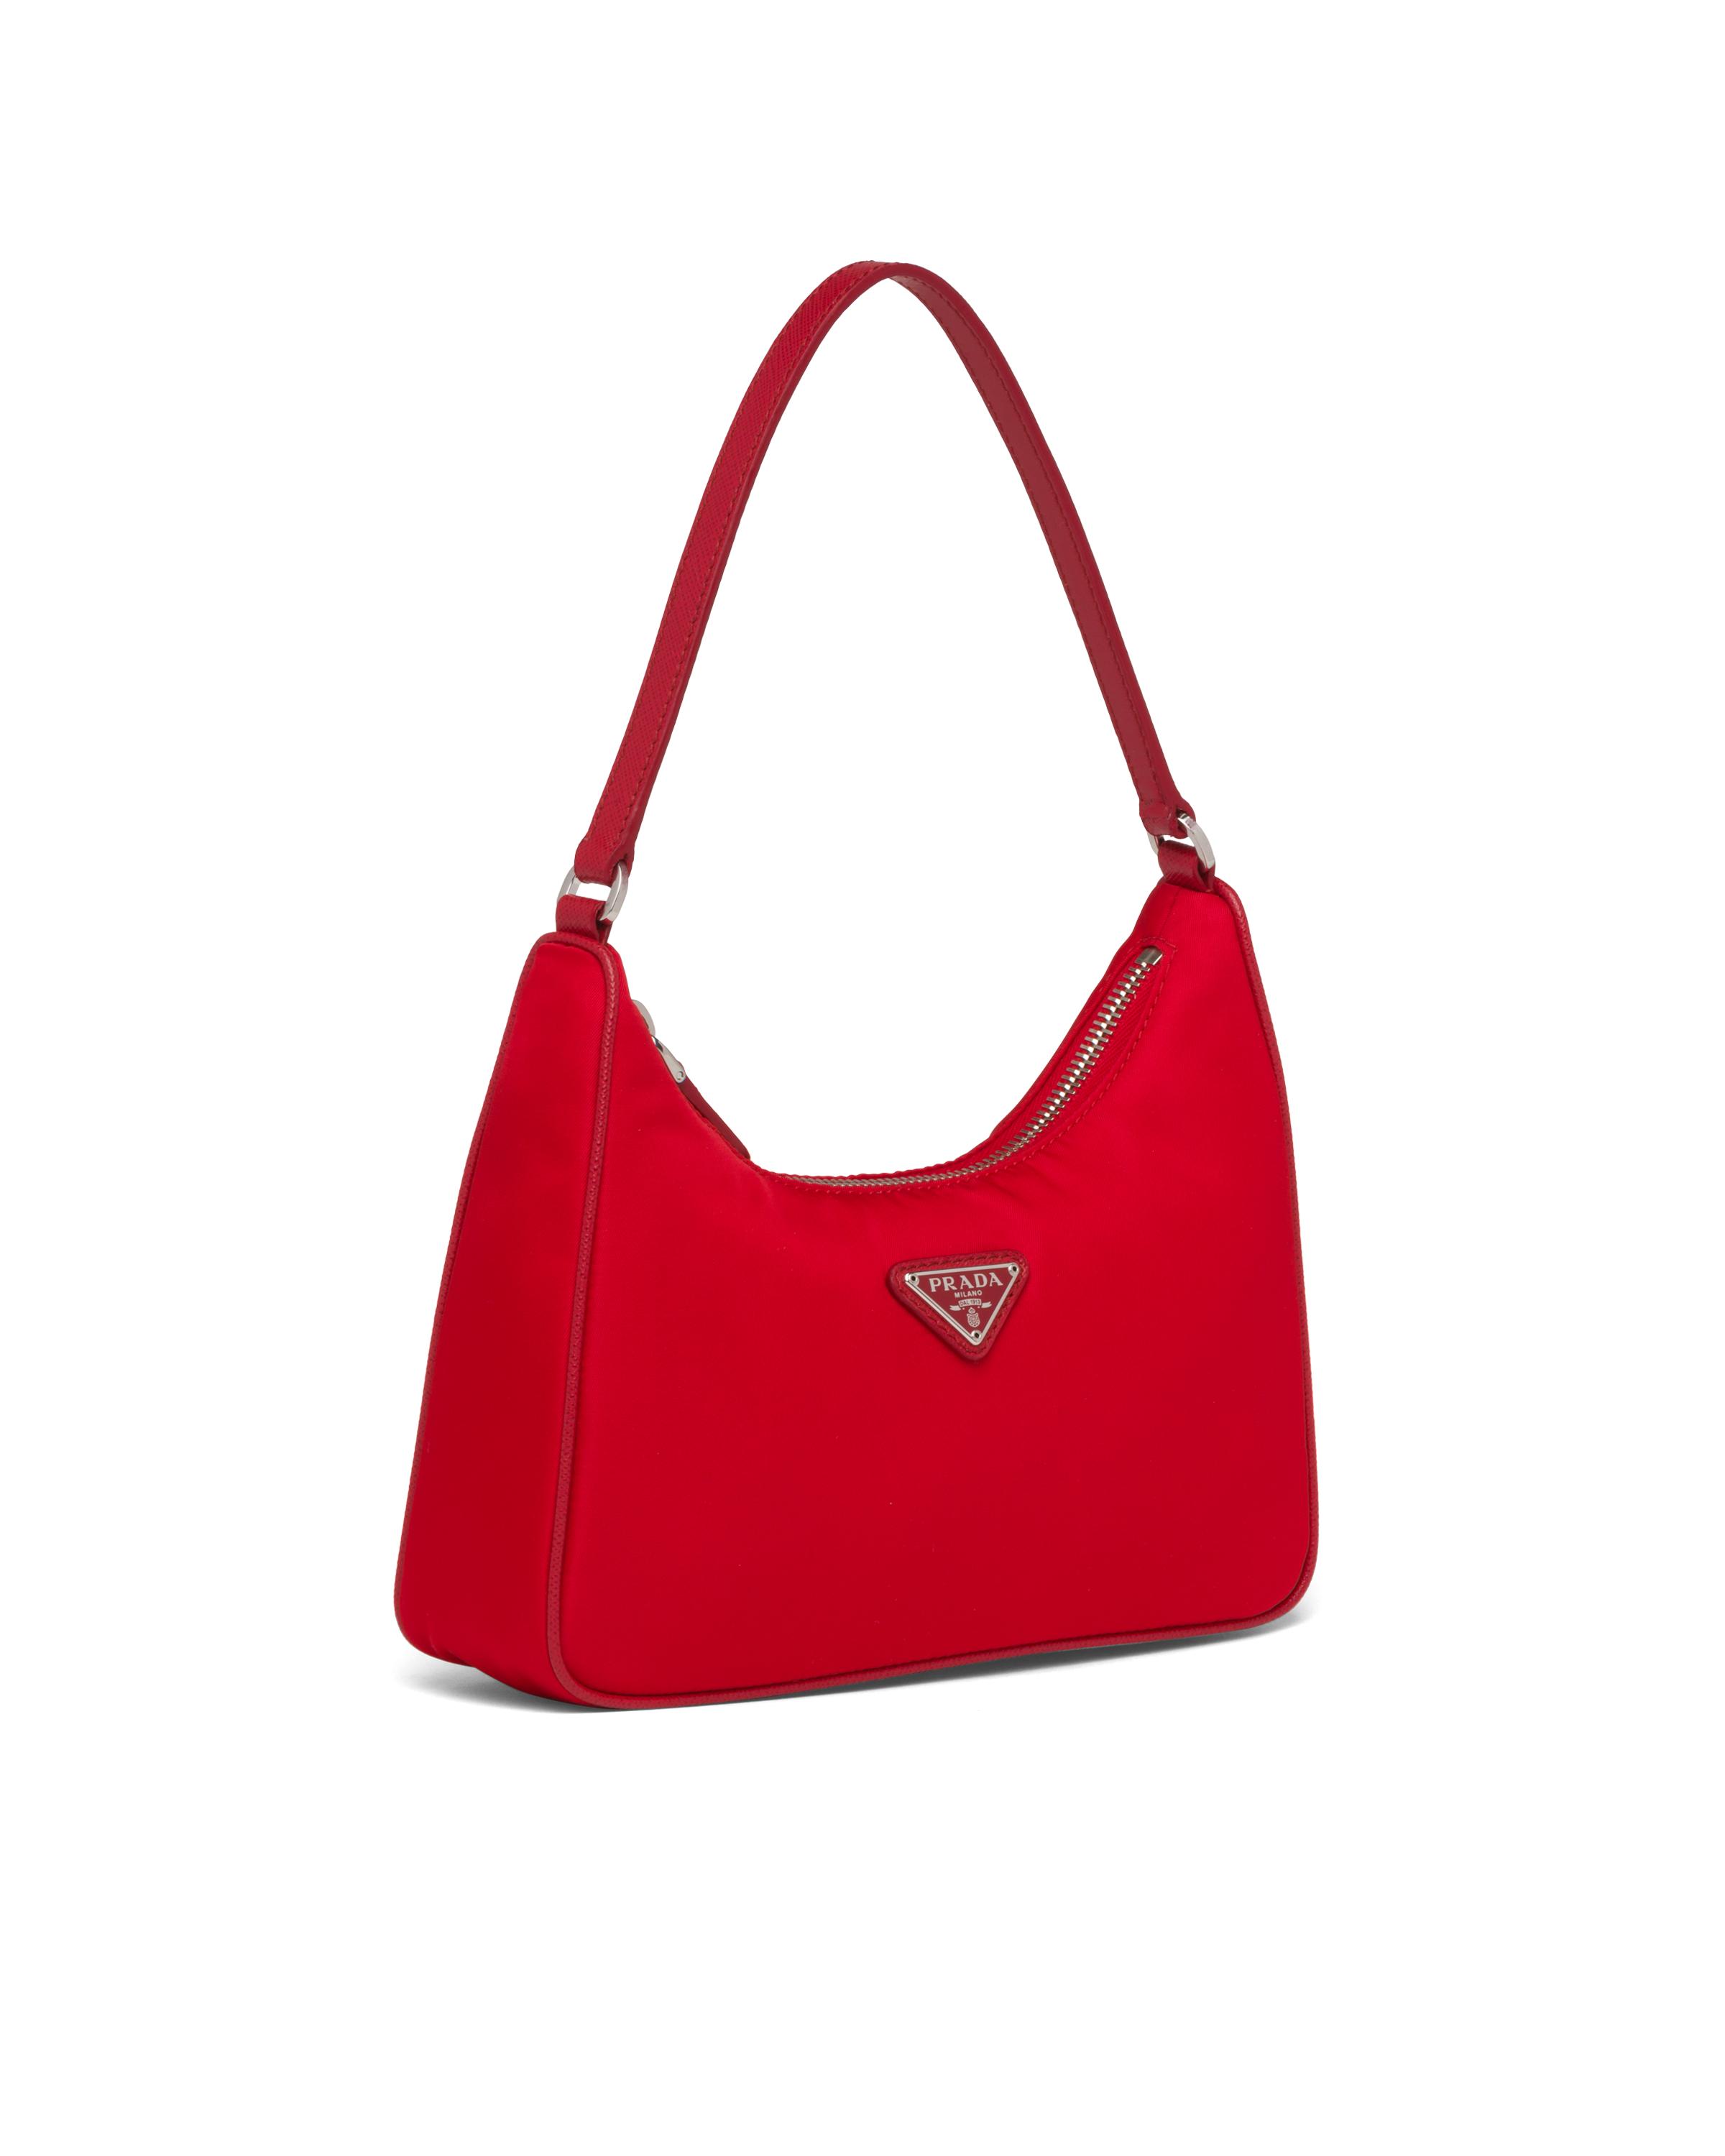 Prada Re-Edition 2005 Shoulder Bag Nylon Red in Nylon/Saffiano